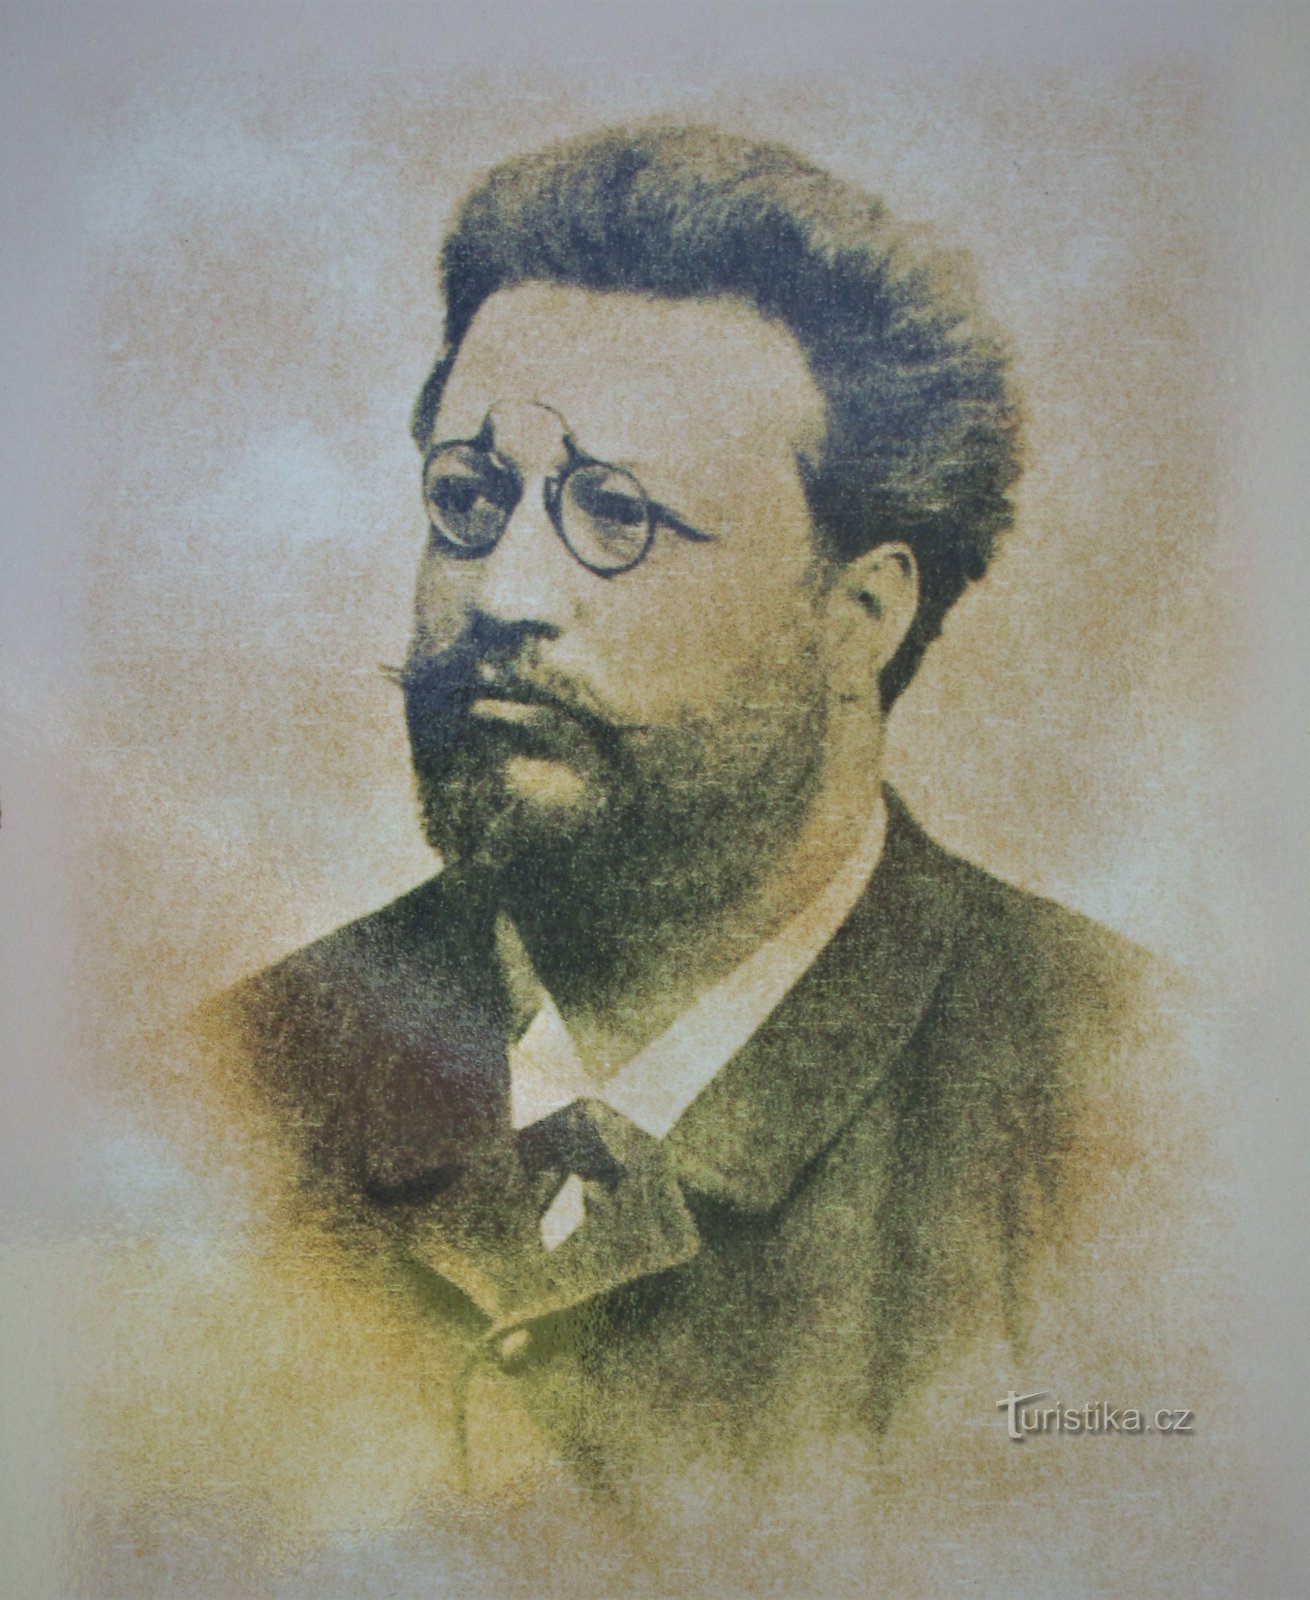 Chân dung Ludvík Masaryk (chụp từ bảng thông tin)